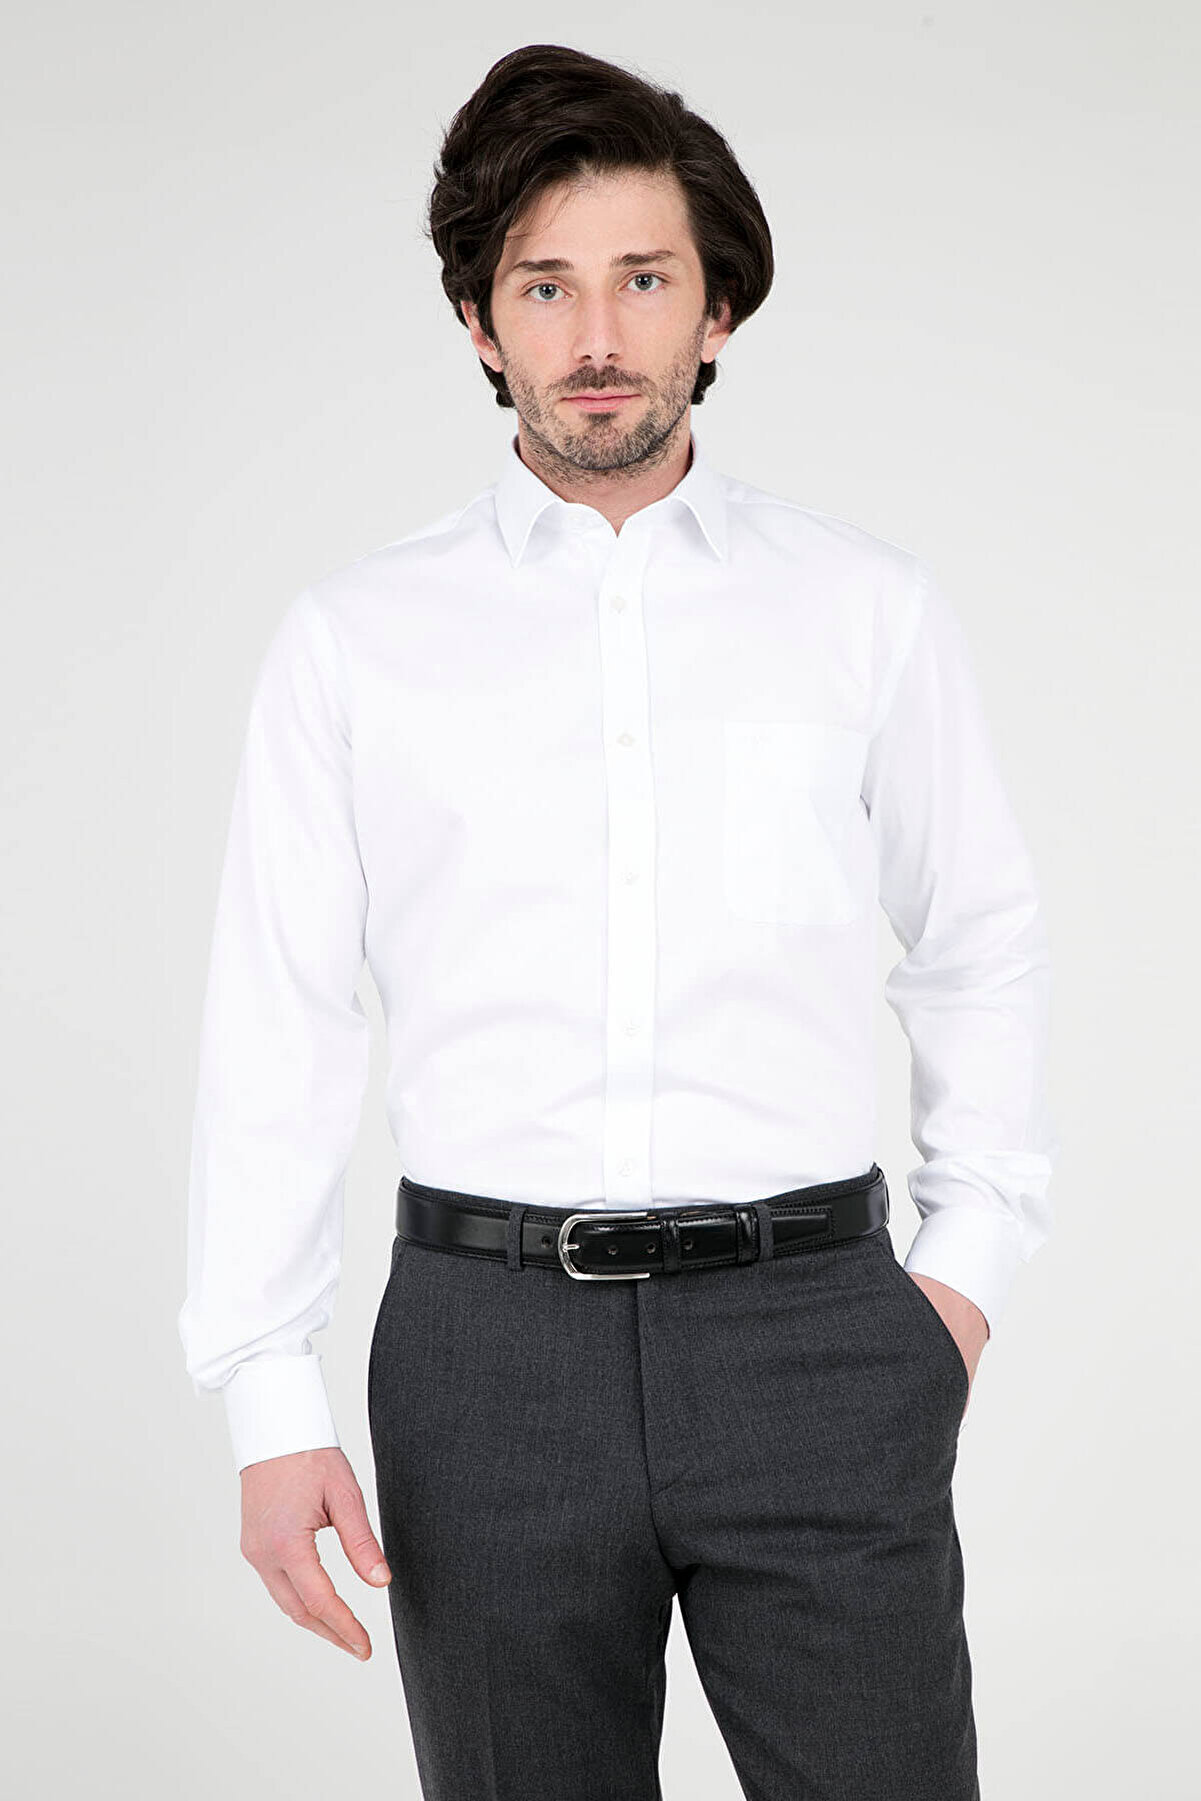 Abbate Erkek Beyaz Uzun Kollu Gömlek - 1Gm91Uk0385R 900